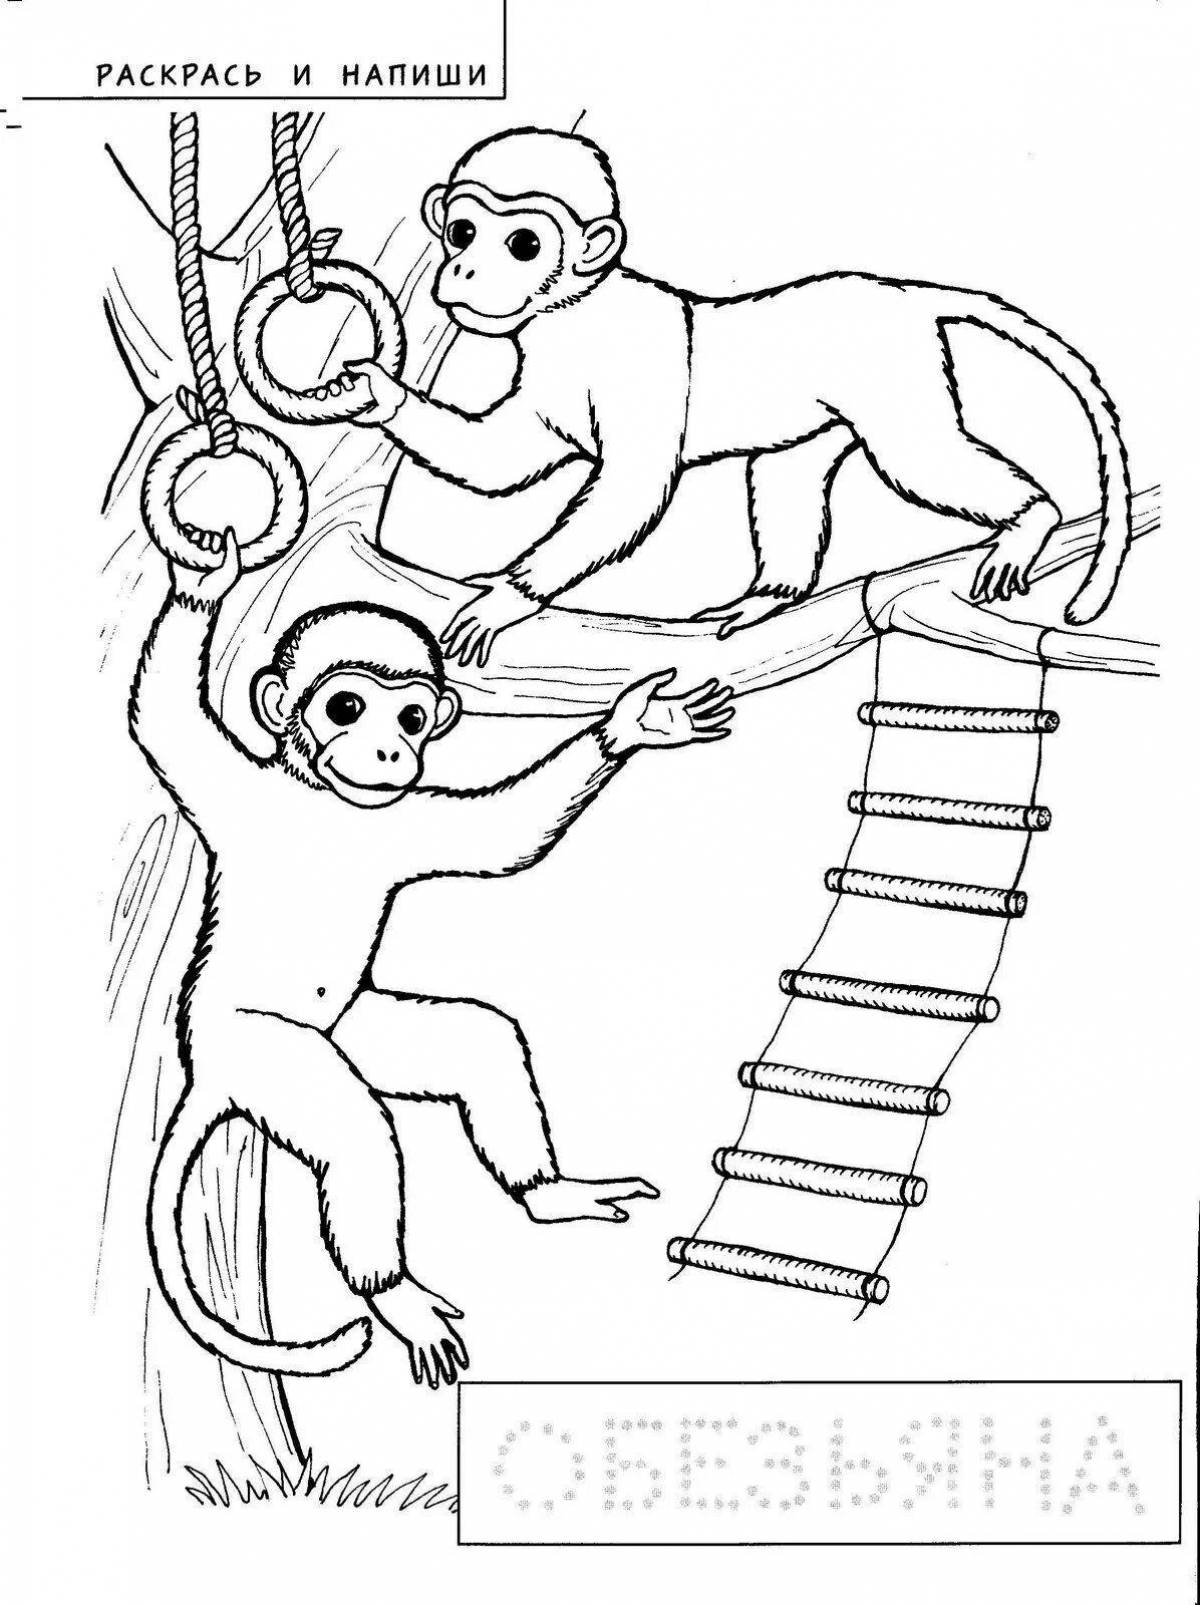 Рисунок к рассказу обезьянка. Раскраска к произведению про обезьянку. Про обезьянку Житков раскраска. Раскраска к произведению Житкова про обезьянку. Иллюстрация к произведению про обезьянку.